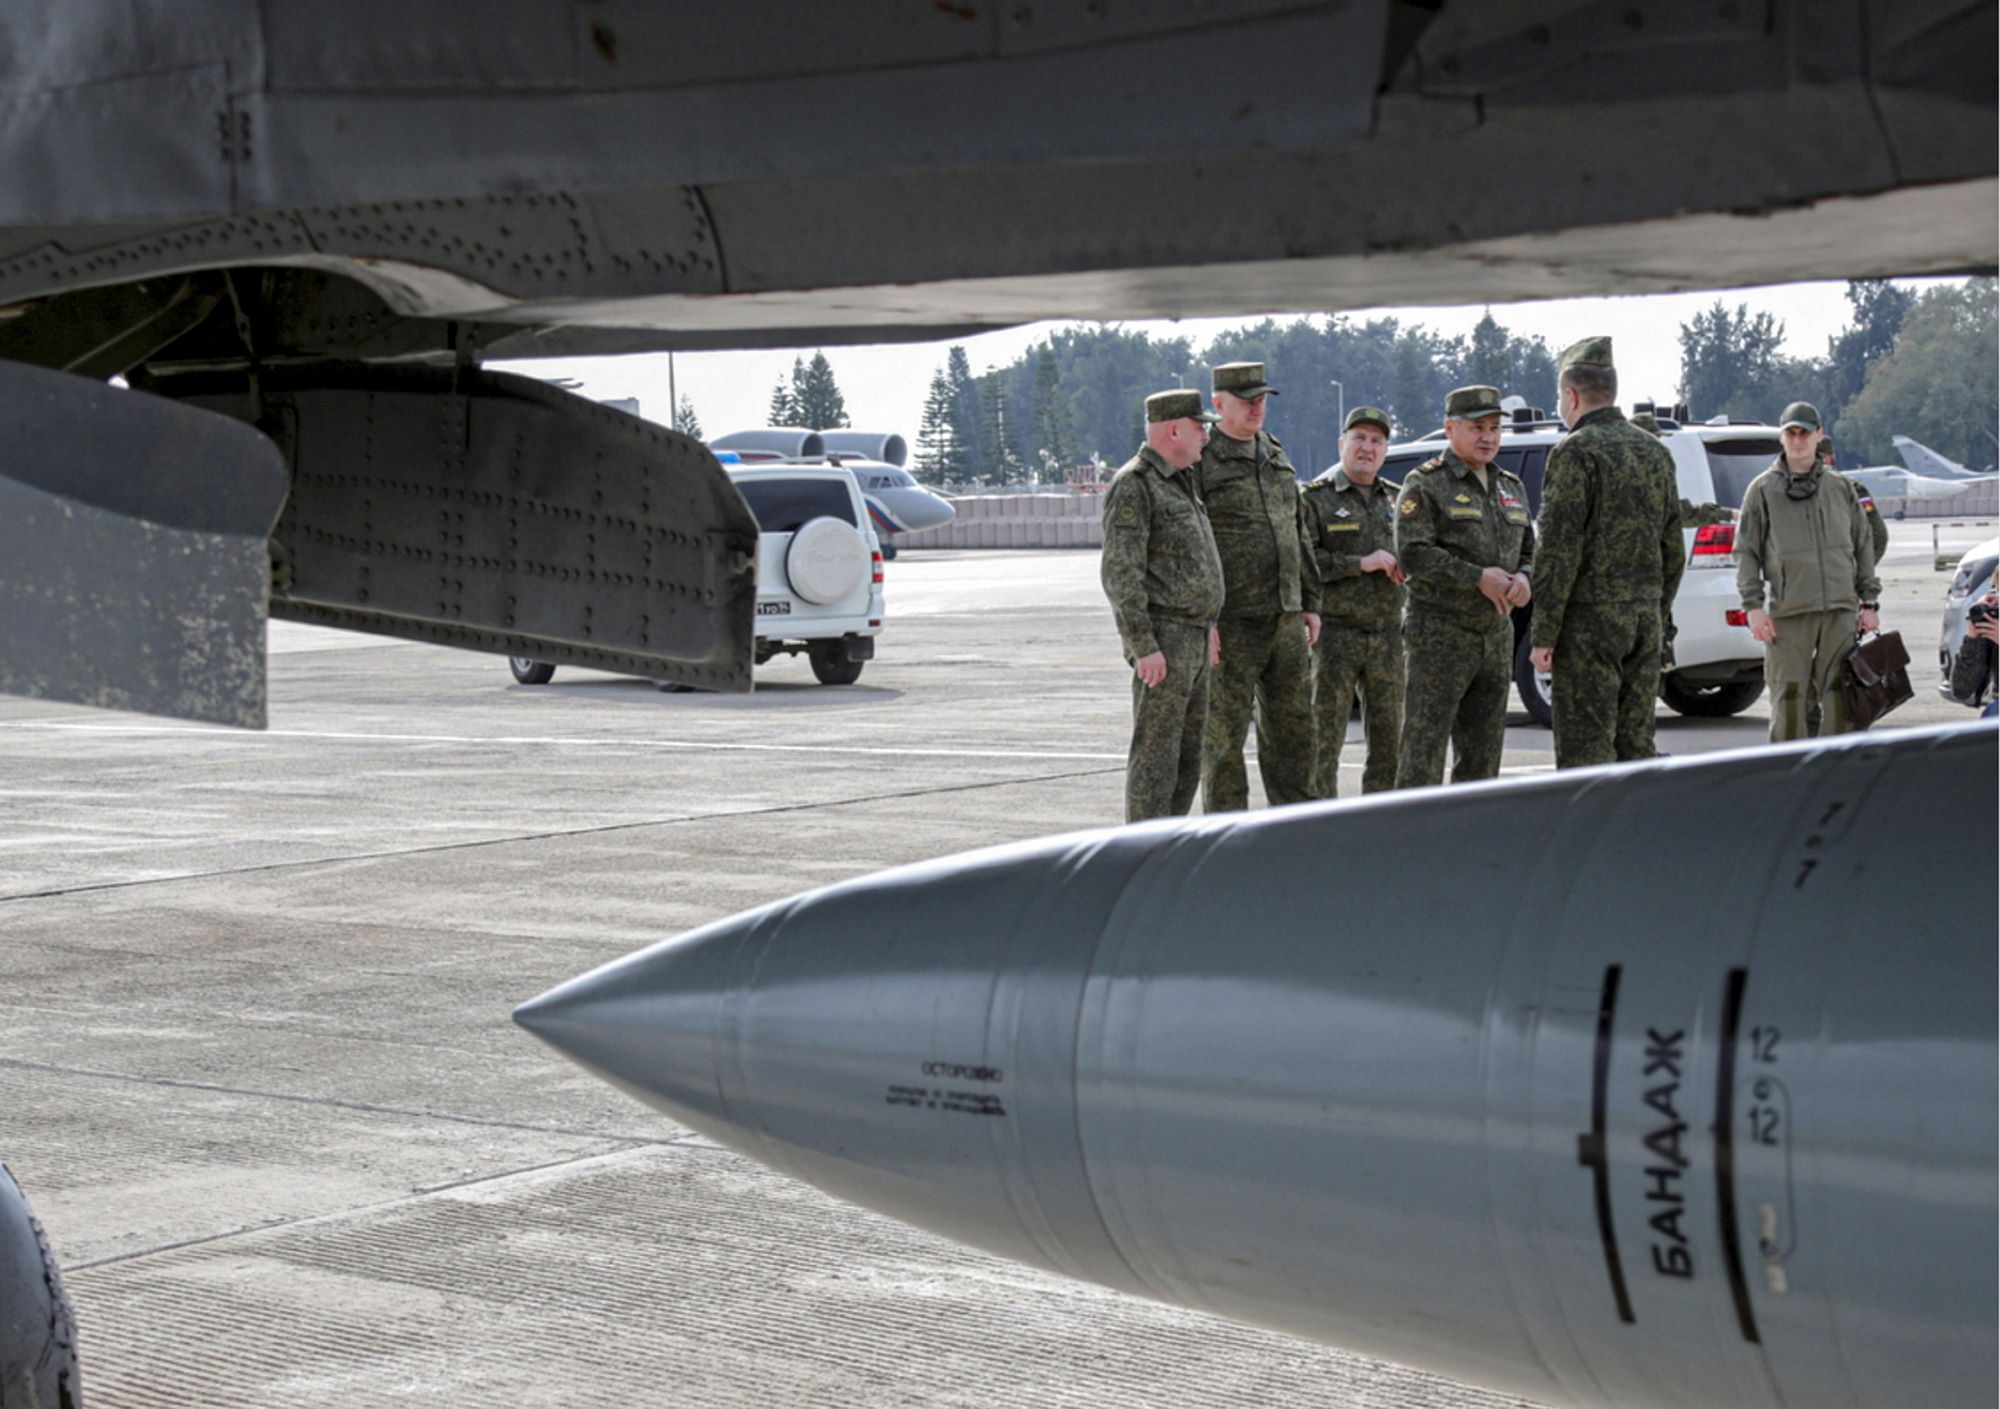 Πόλεμος στην Ουκρανία: Το Κίεβο λέει ότι κατέρριψε για πρώτη φορά ρωσικό υπερηχητικό πύραυλο